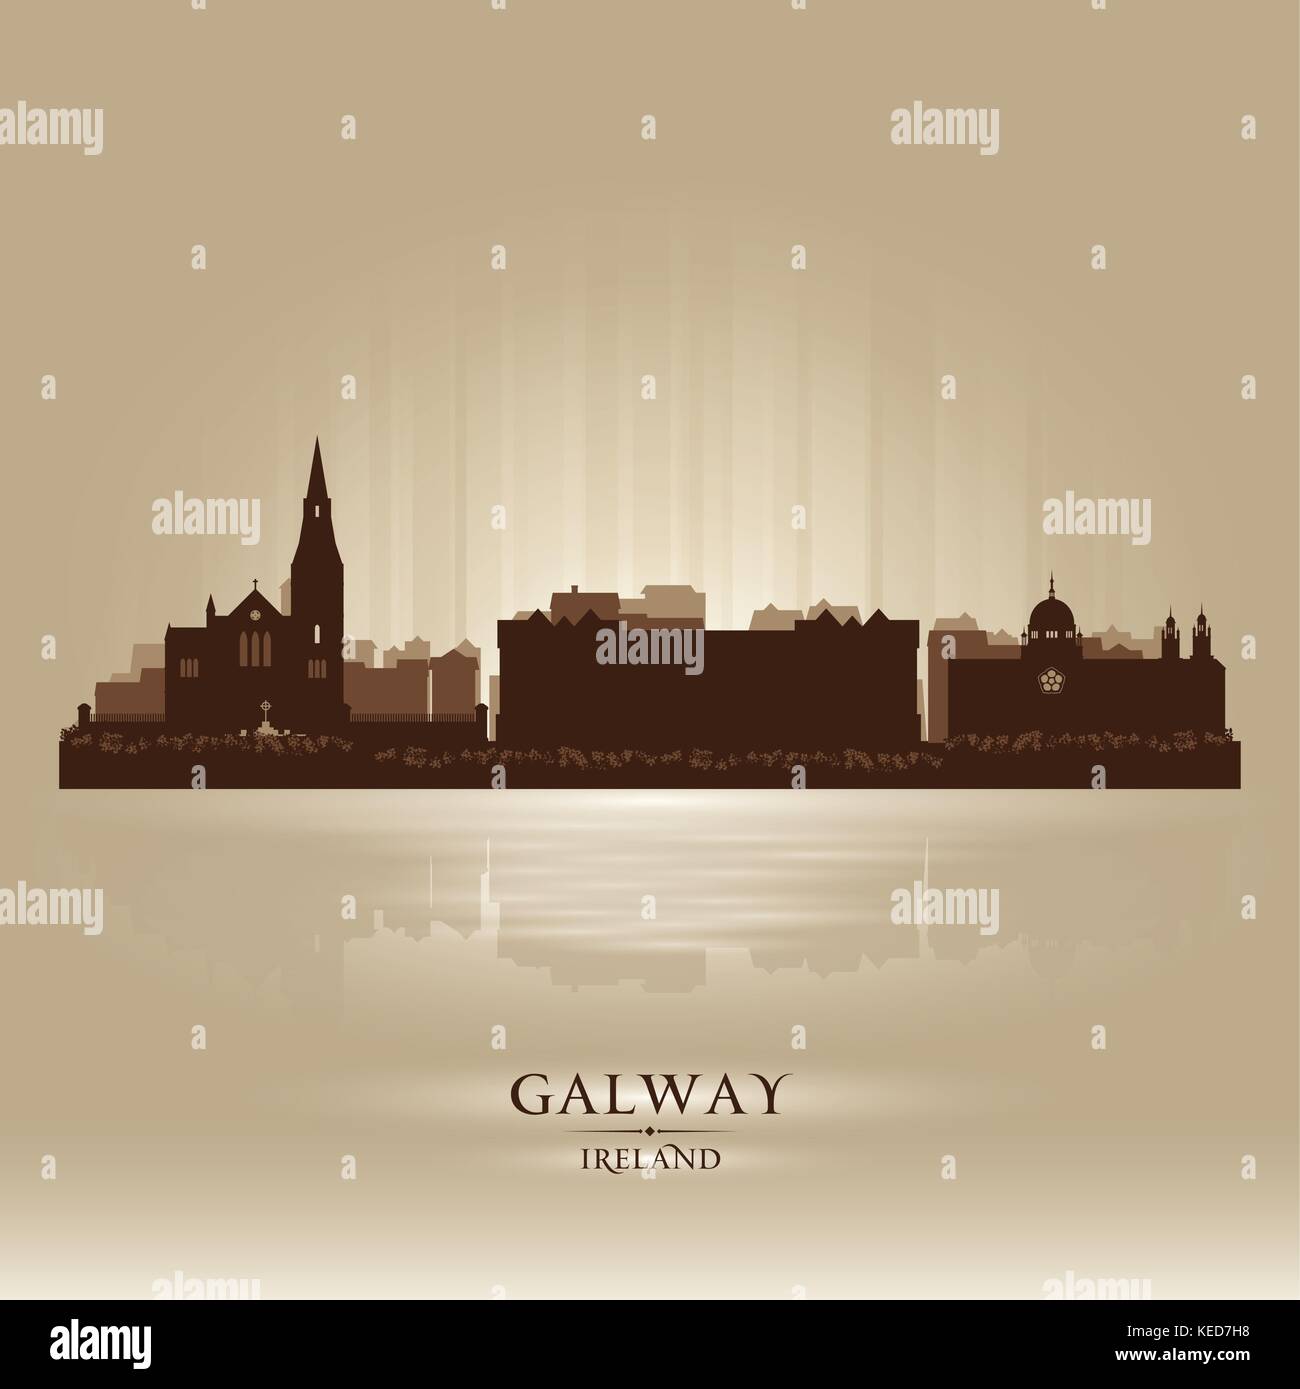 Galway Irland Skyline Stadtsilhouette Stock Vektor